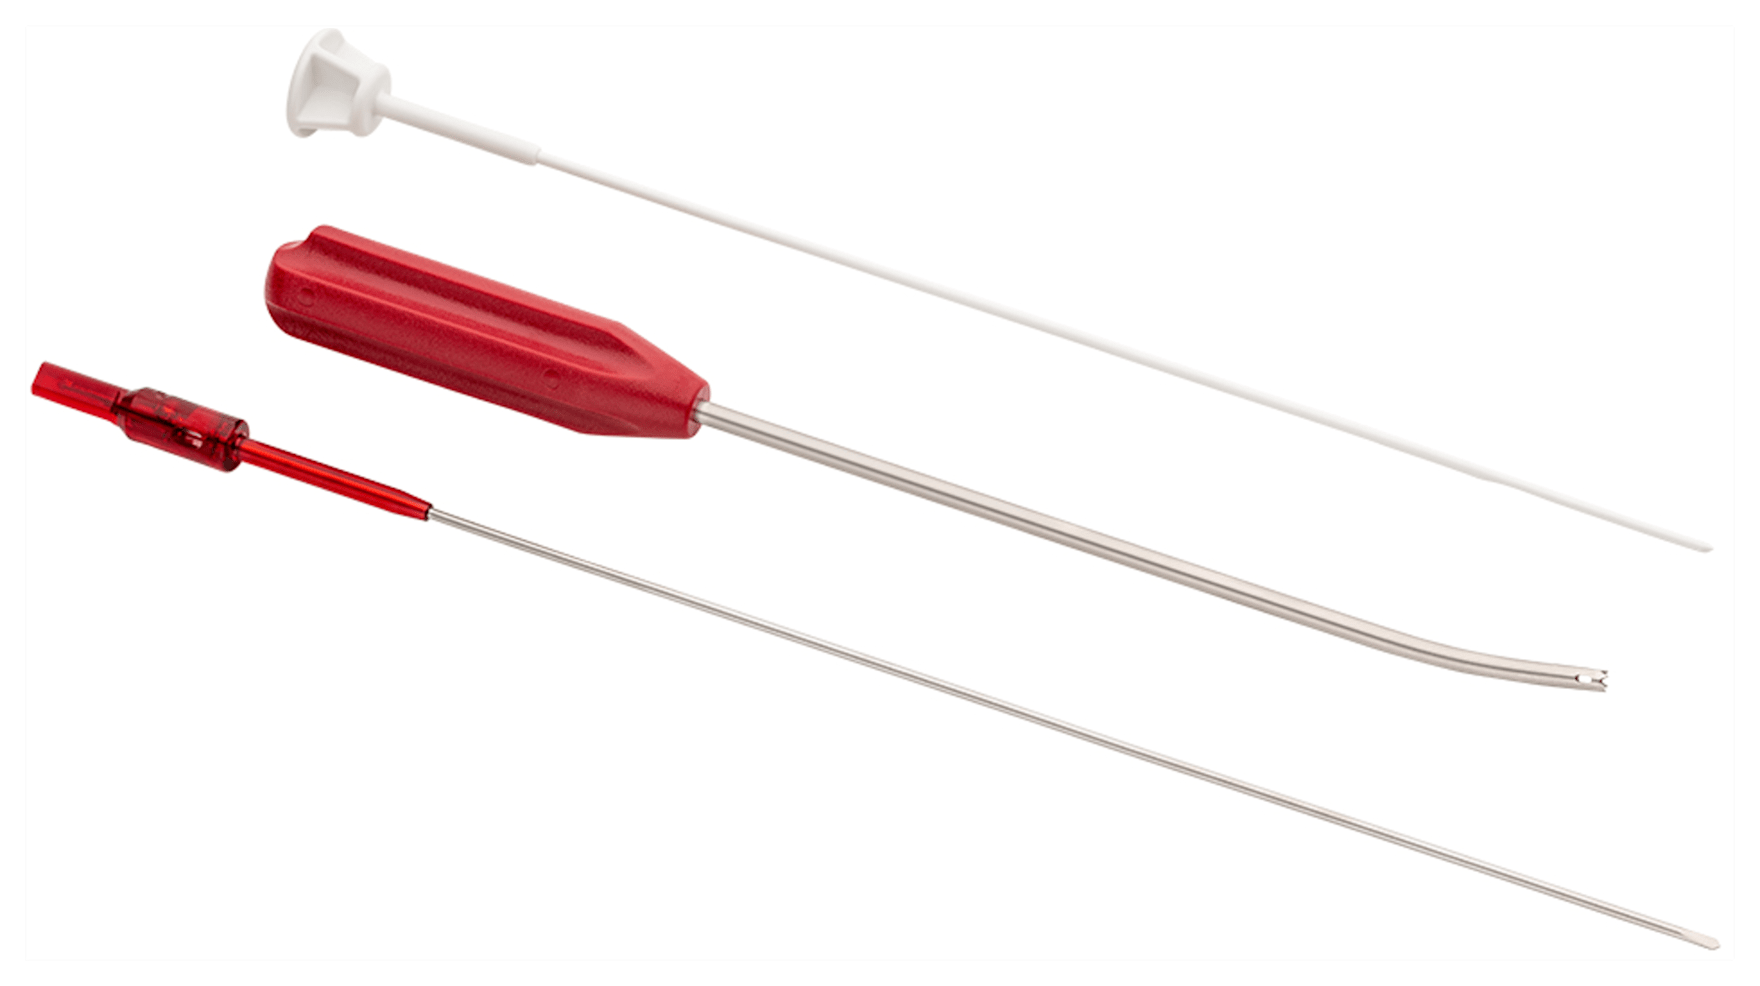 Einwegkit für knotenlosen FiberTak-Soft-Anker, mit flexiblem Bohrer, gebogenem Spear und Obturator